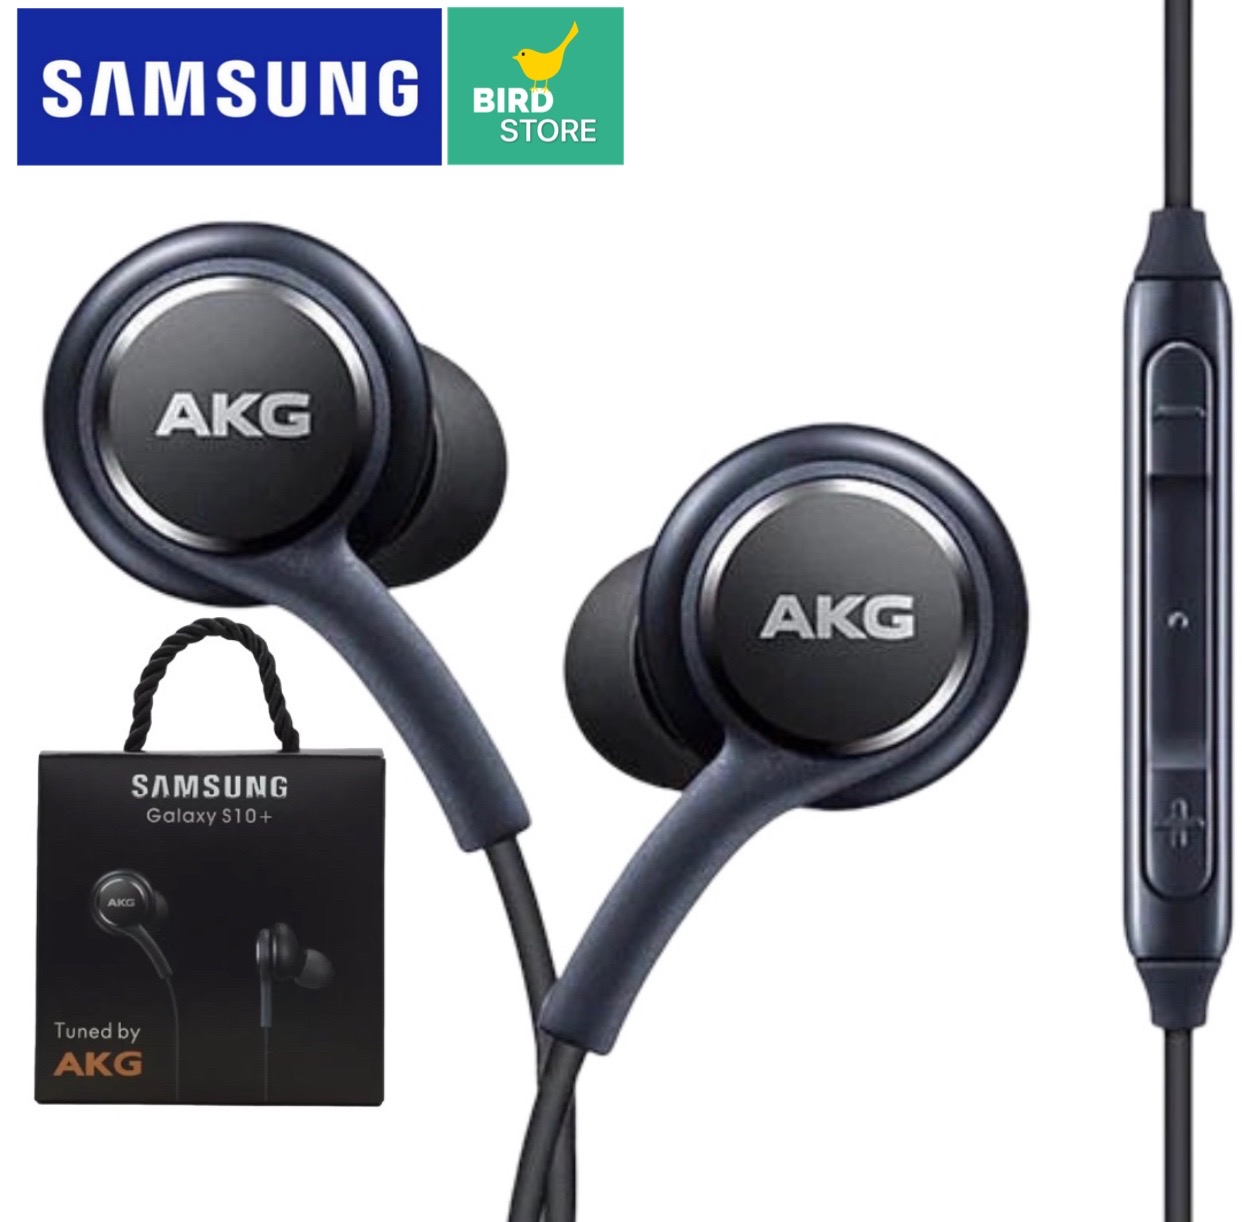 หูฟัง AKG S8  หูฟังเอียร์บัด หูฟัง Samsung เสียงดีคุณภาพสูงเบสแน่น หูฟังซัมซุง เสียงเพราะ ฟังชัดระดับHD BY BIRD-STORE